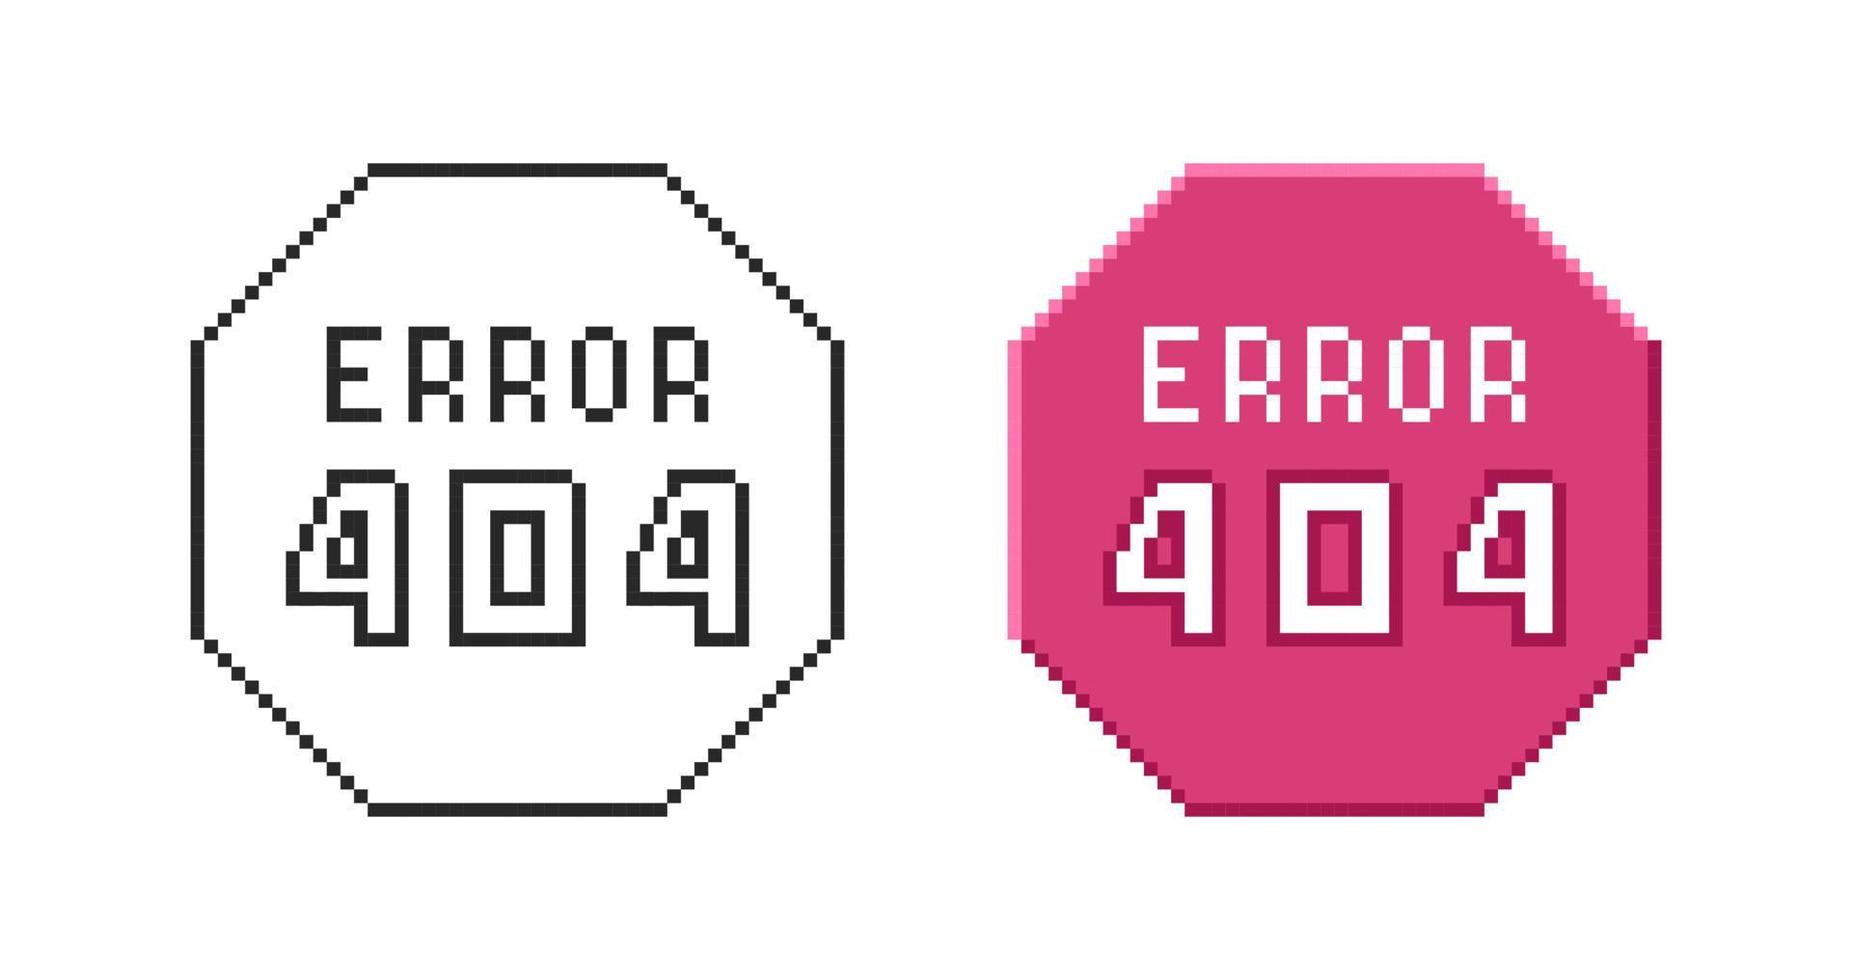 Internet connection error icon 404. Set of retro pixel symbols. vector